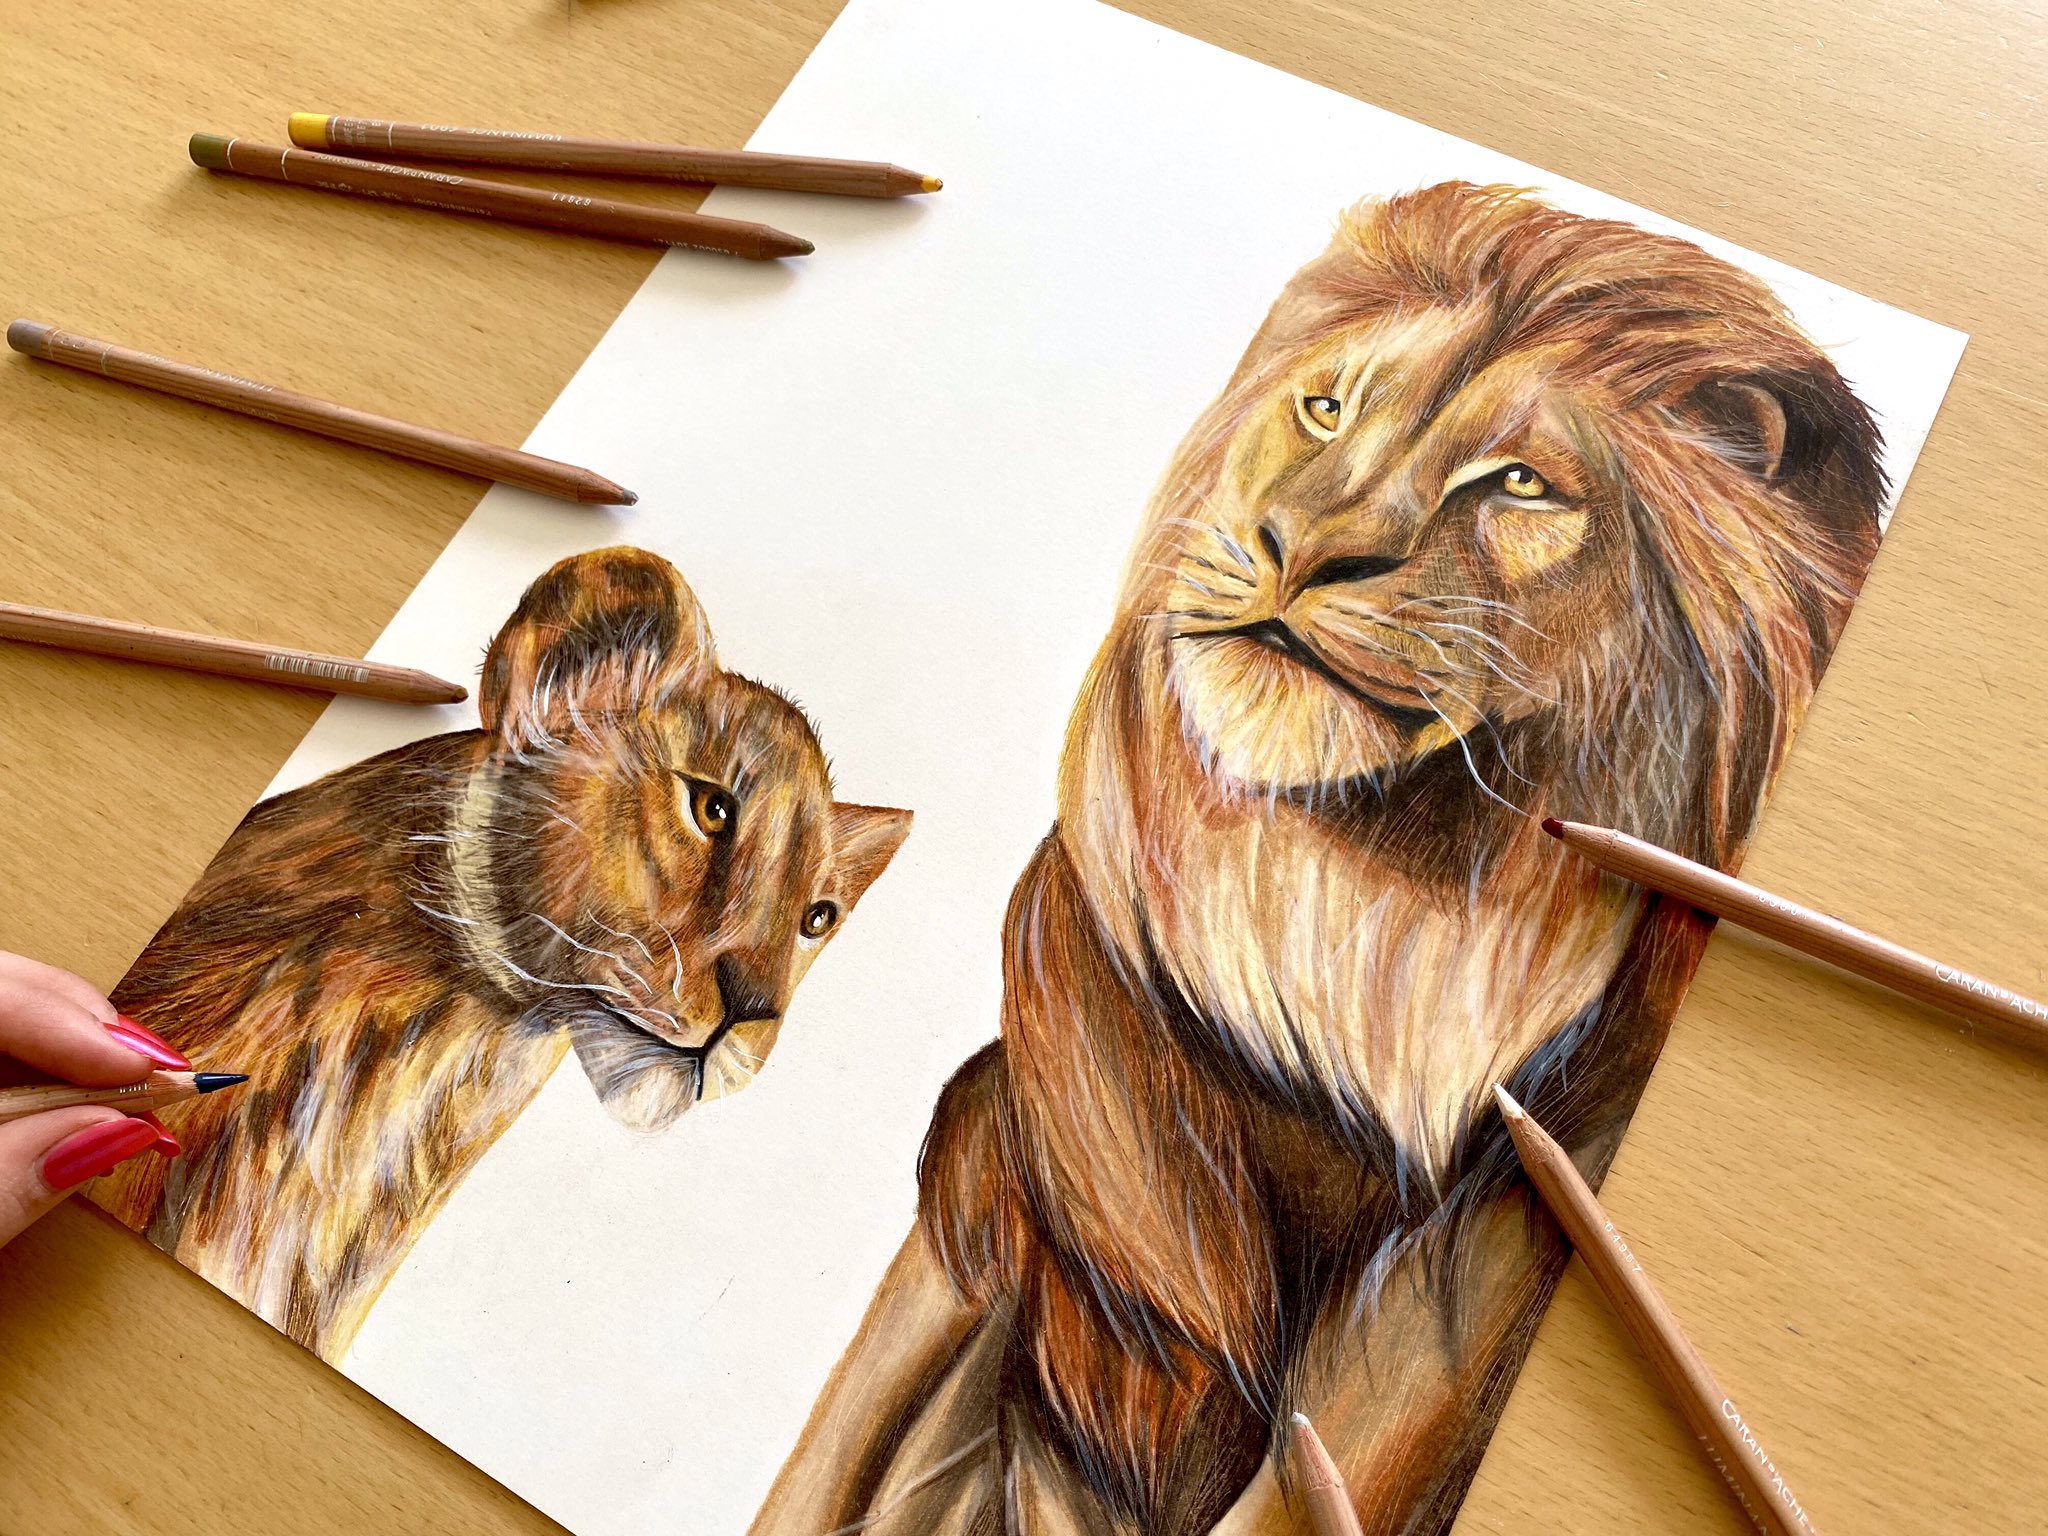 تويتر Zodoodlez على تويتر This Is A Drawing Of Simba And Mufasa From The Lion King Check Out My Youtube Video Of Me Drawing Them T Co Ckntpmtxex Art Artist Artistsontwitter